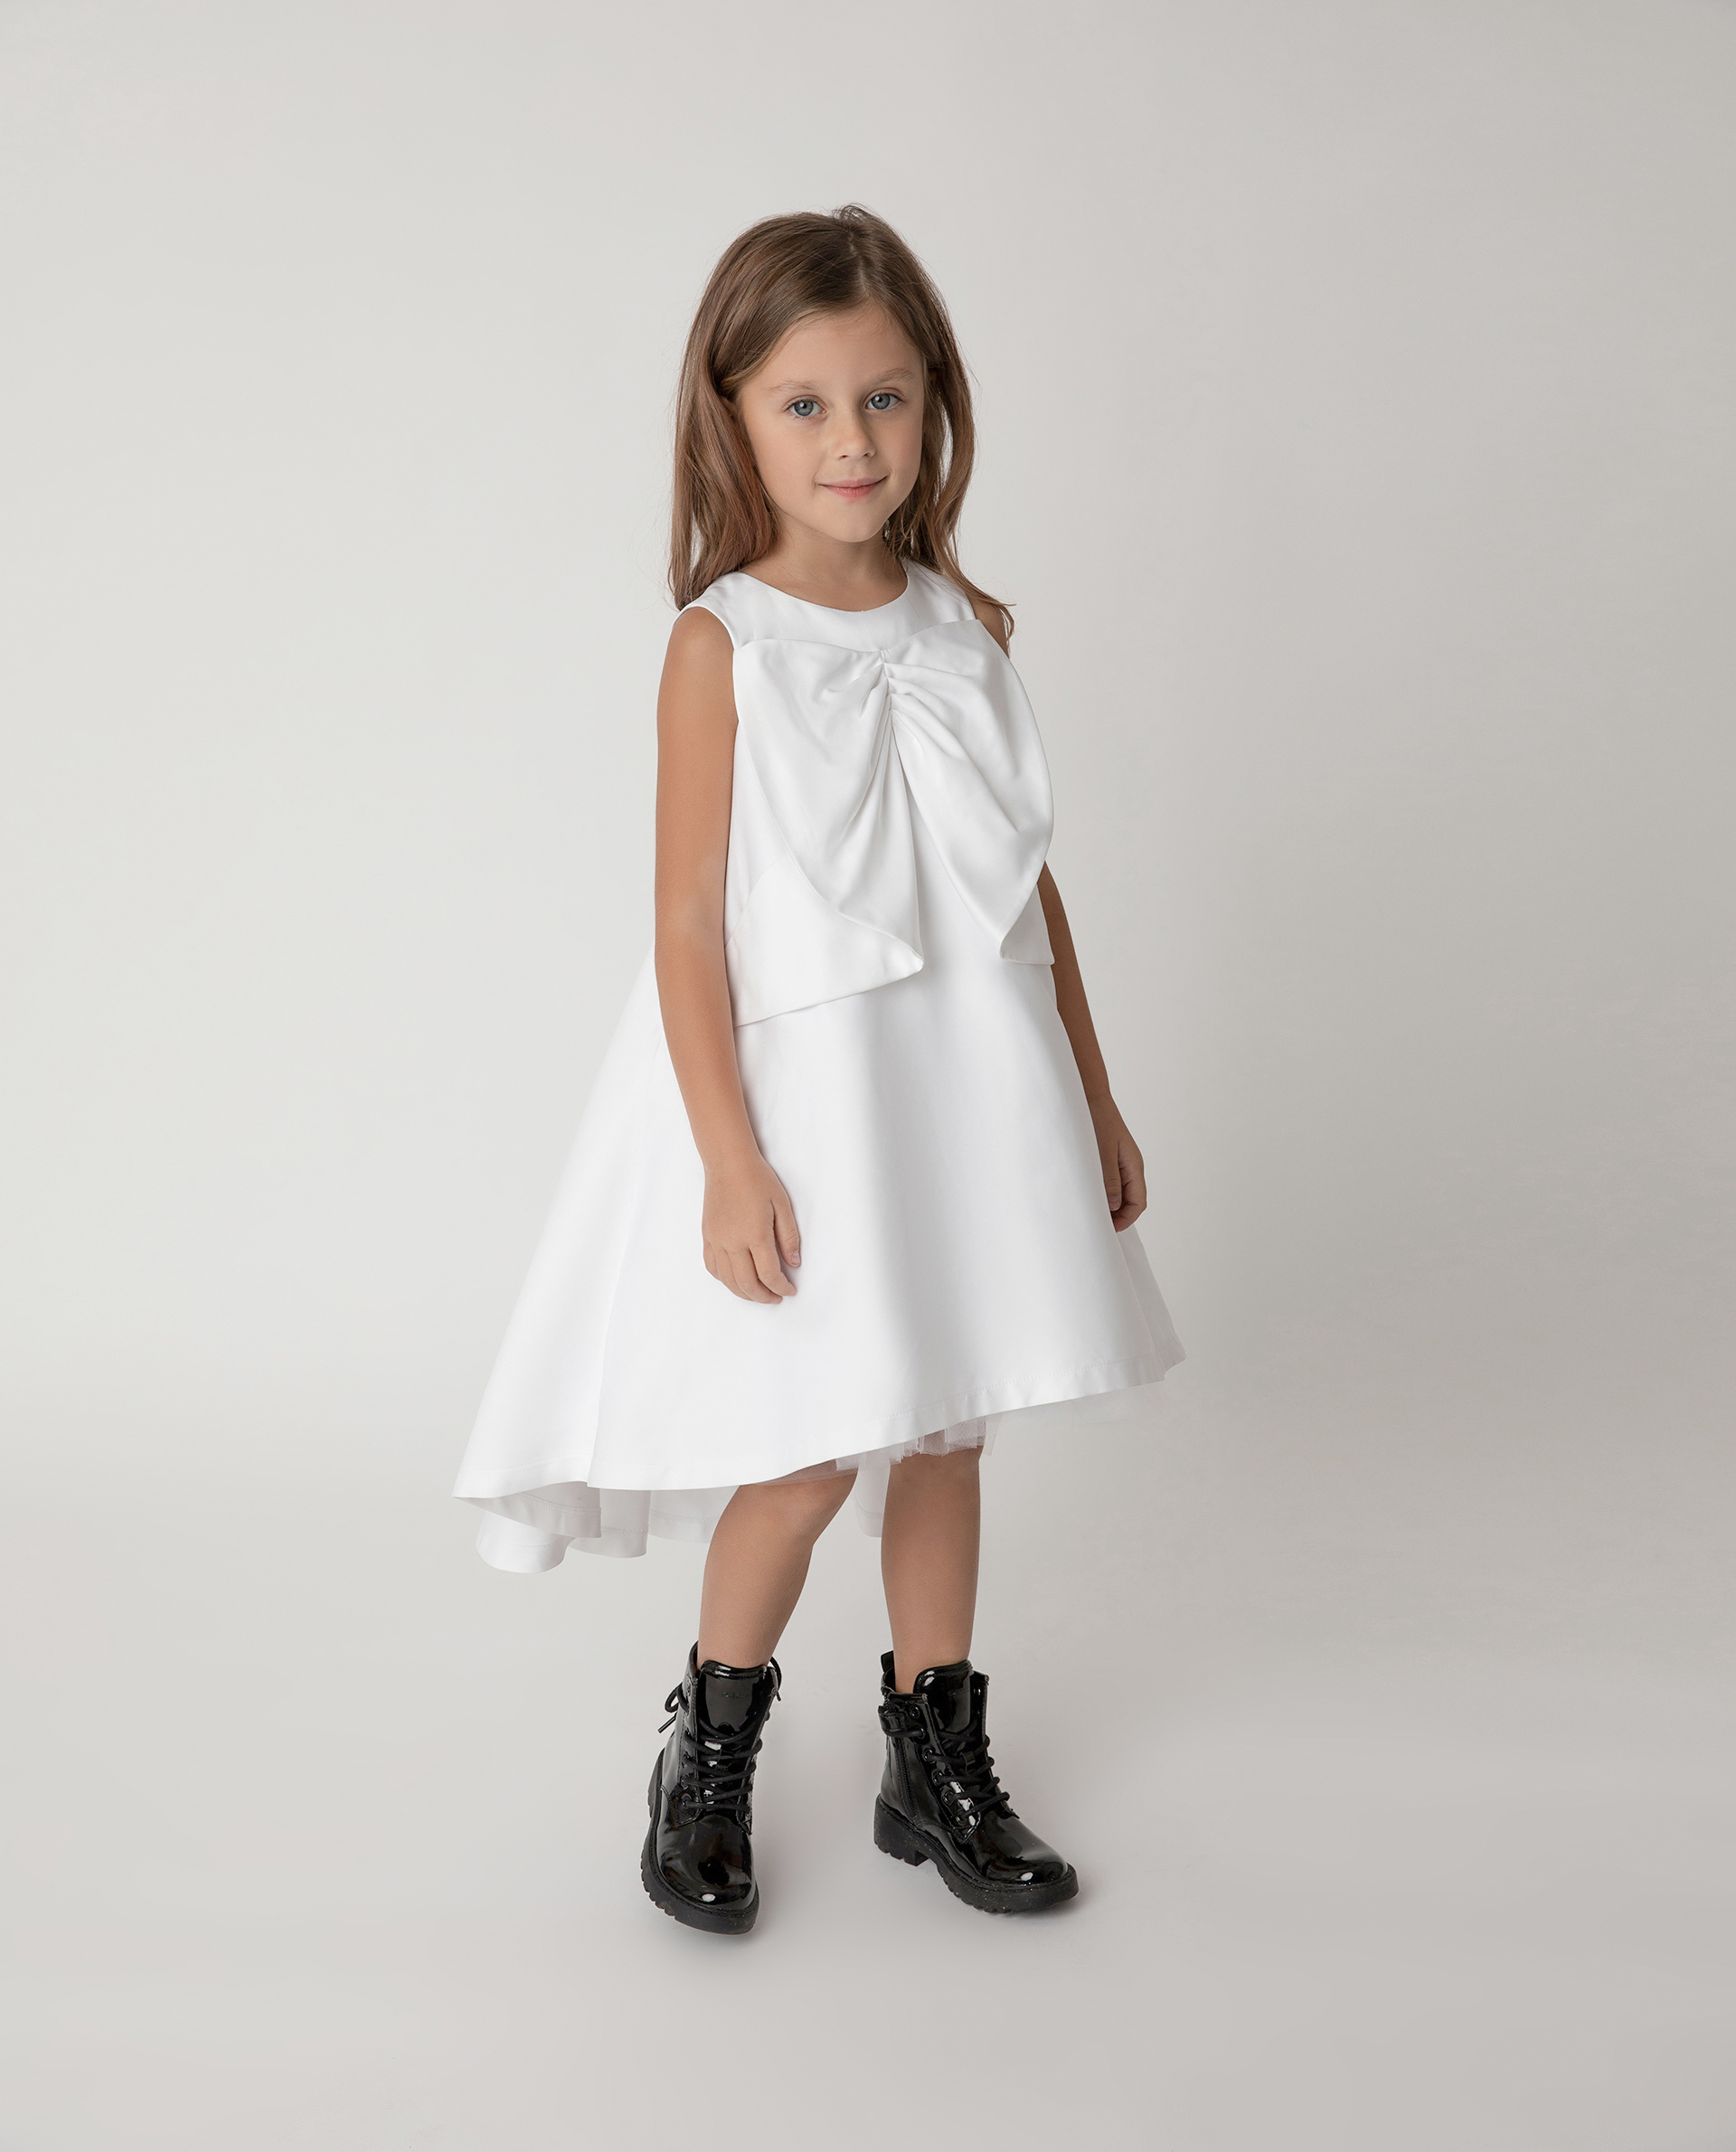 Купить 121GPGMC2502, Платье нарядное с бантом Gulliver, белый, 104, Полиэстер, Женский, Лето, ВЕСНА/ЛЕТО 2021 (shop: GulliverMarket Gulliver Market)